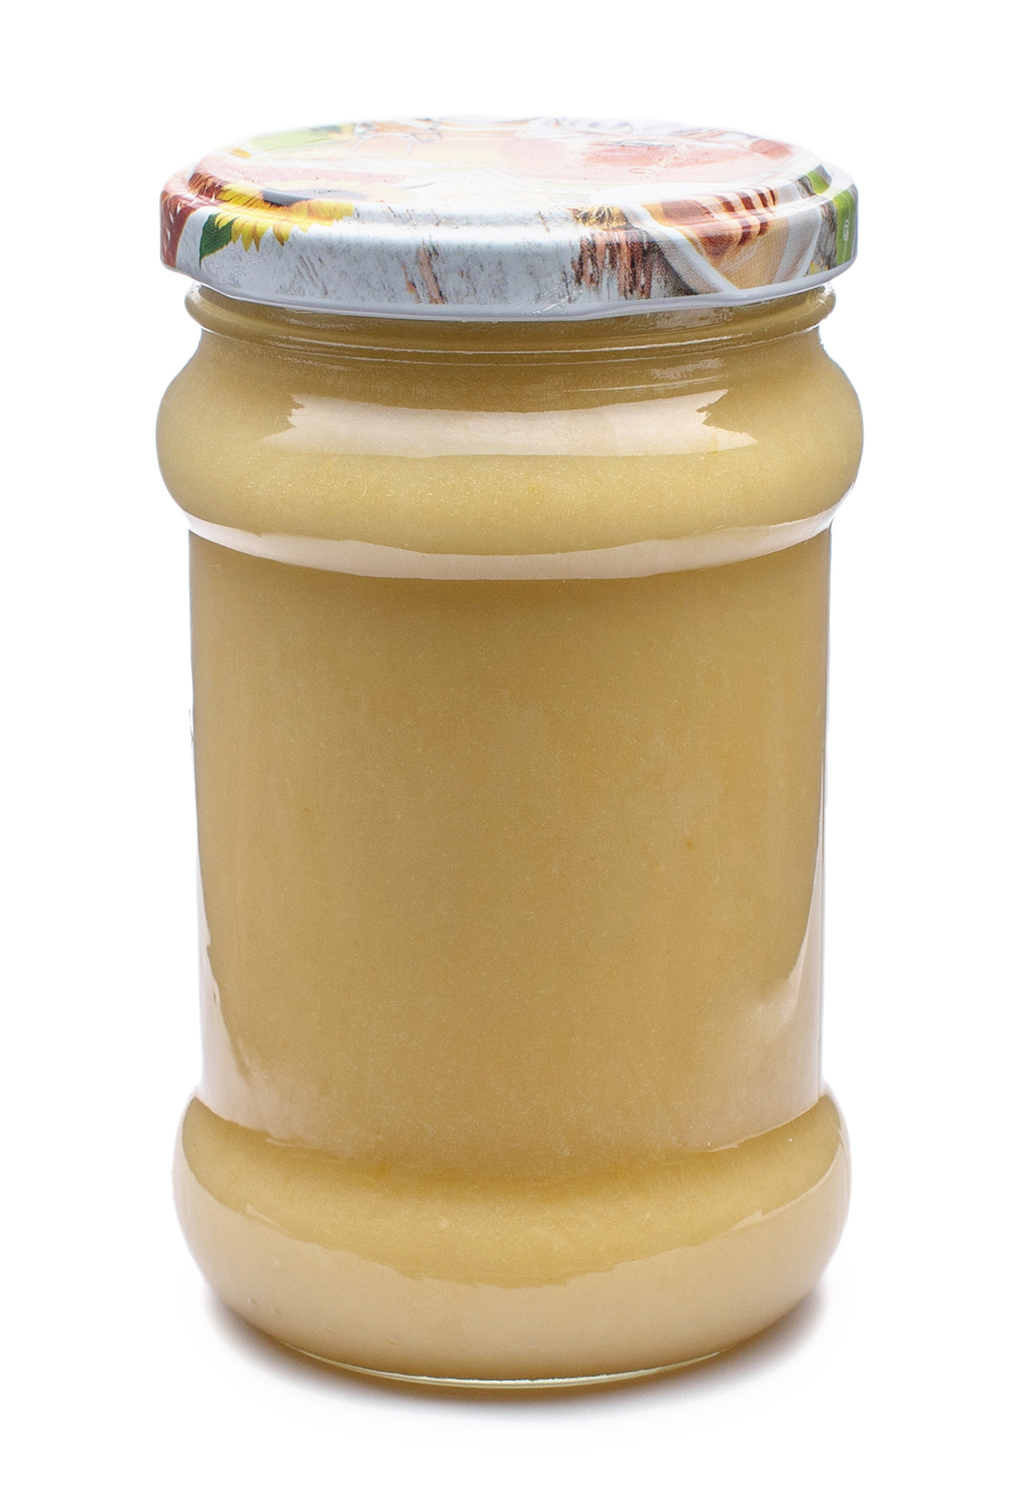 MiodoMix - Miód Wielokwiatowy Kremowany z Pomarańczą (słoik szklany 400 g) - Karton 40 sztuk